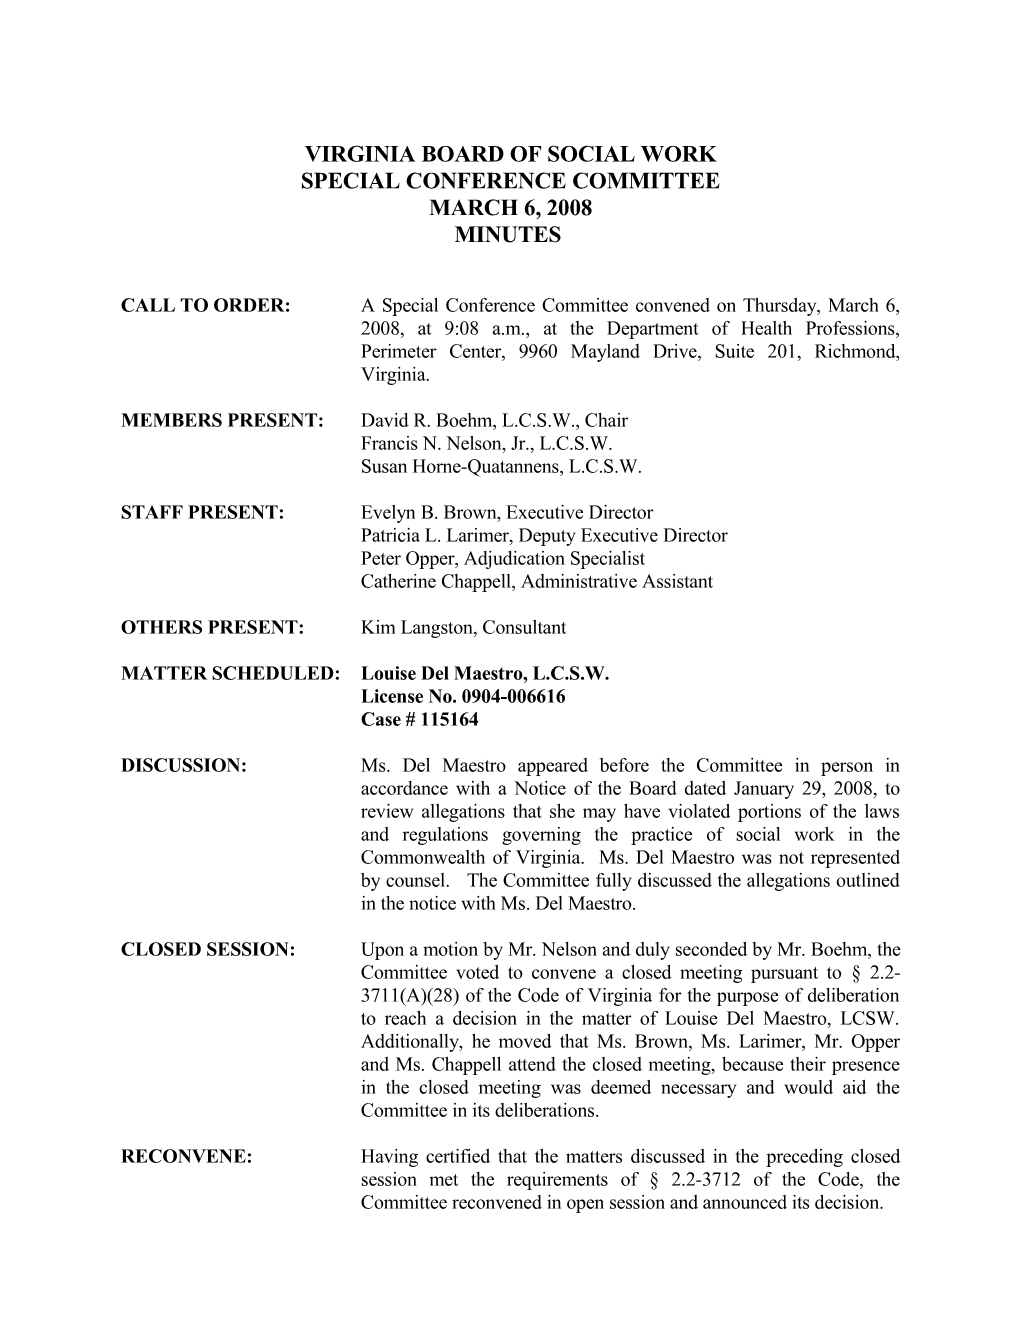 Social Work - Draft Minutes for September 20, 2007 Informal Conferences